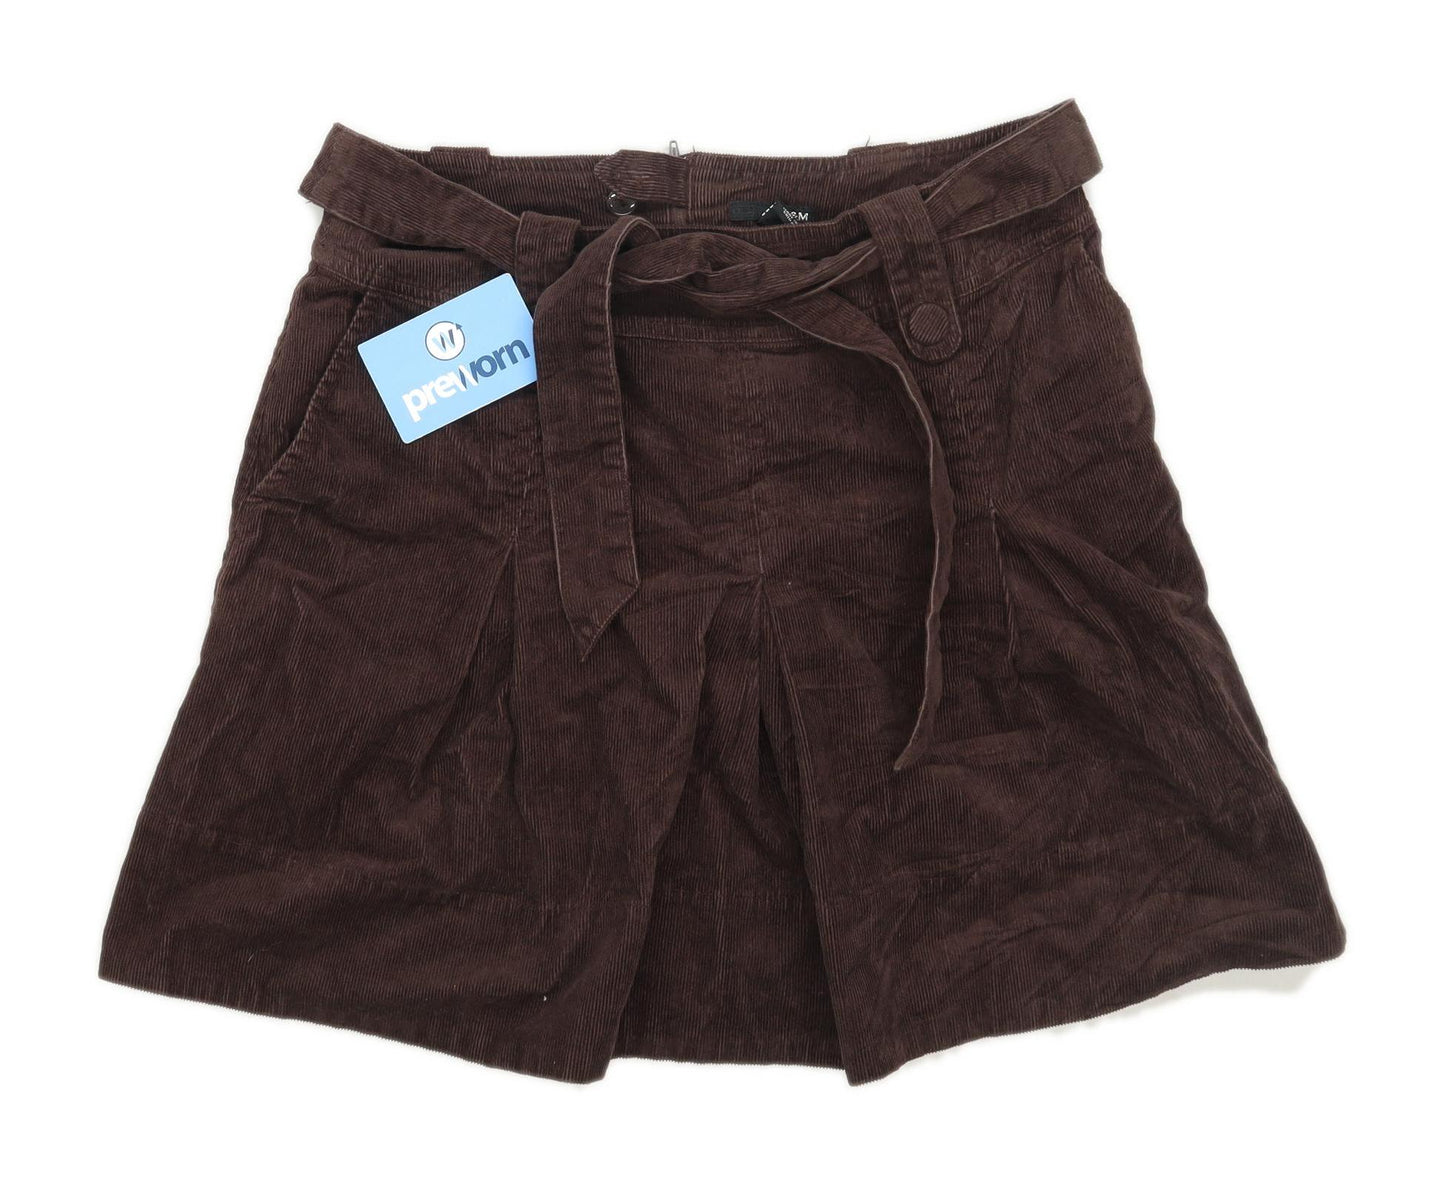 H&M Womens Size 10 Corduroy Blend Textured Brown Skirt (Regular)